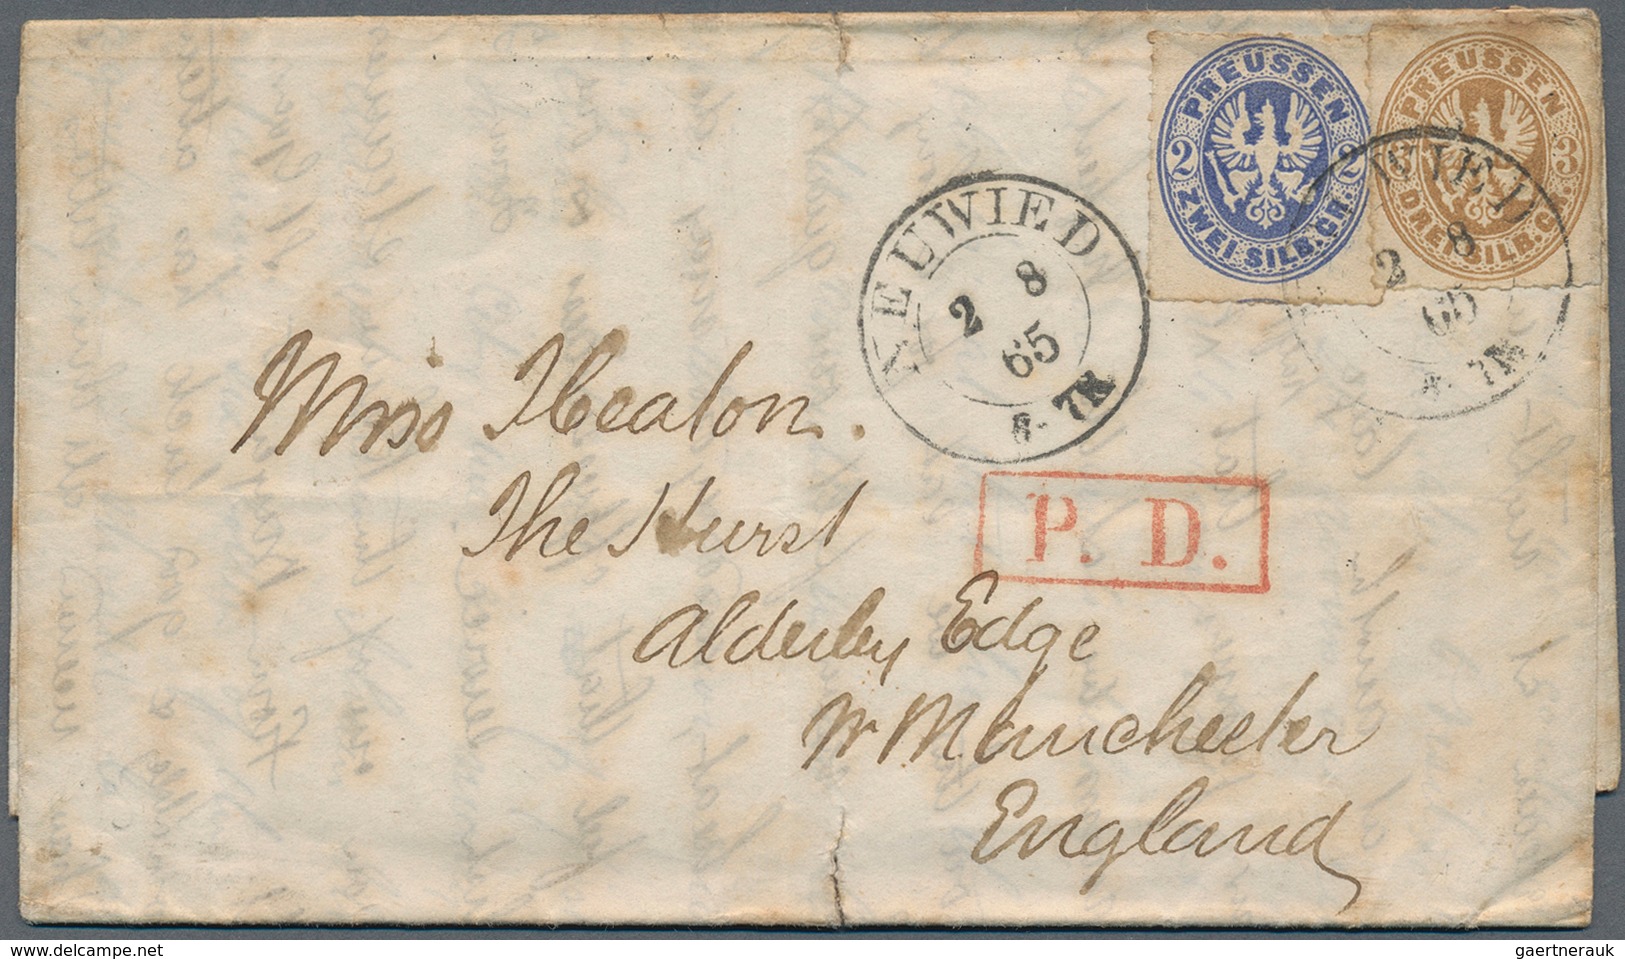 31292 Preußen - Marken und Briefe: 1850/1870 (ca.), attraktiver und vielseitiger Posten mit rund 130 Beleg